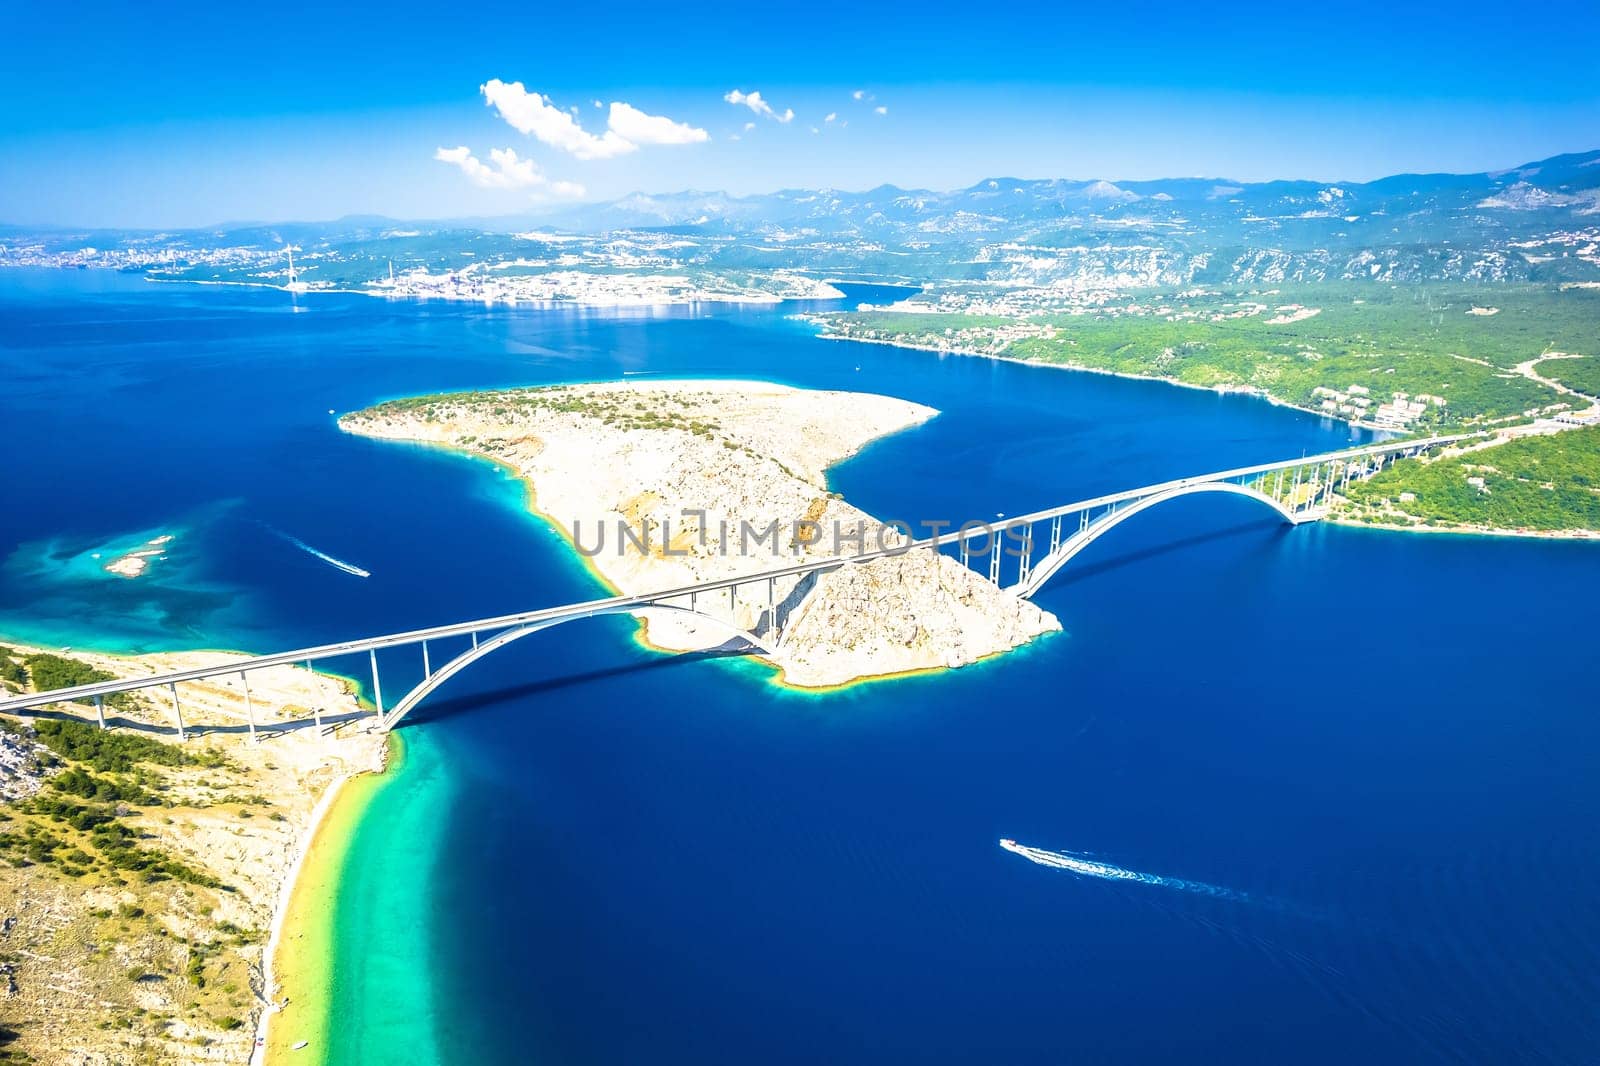 Island of Krk bridge aerial view by xbrchx